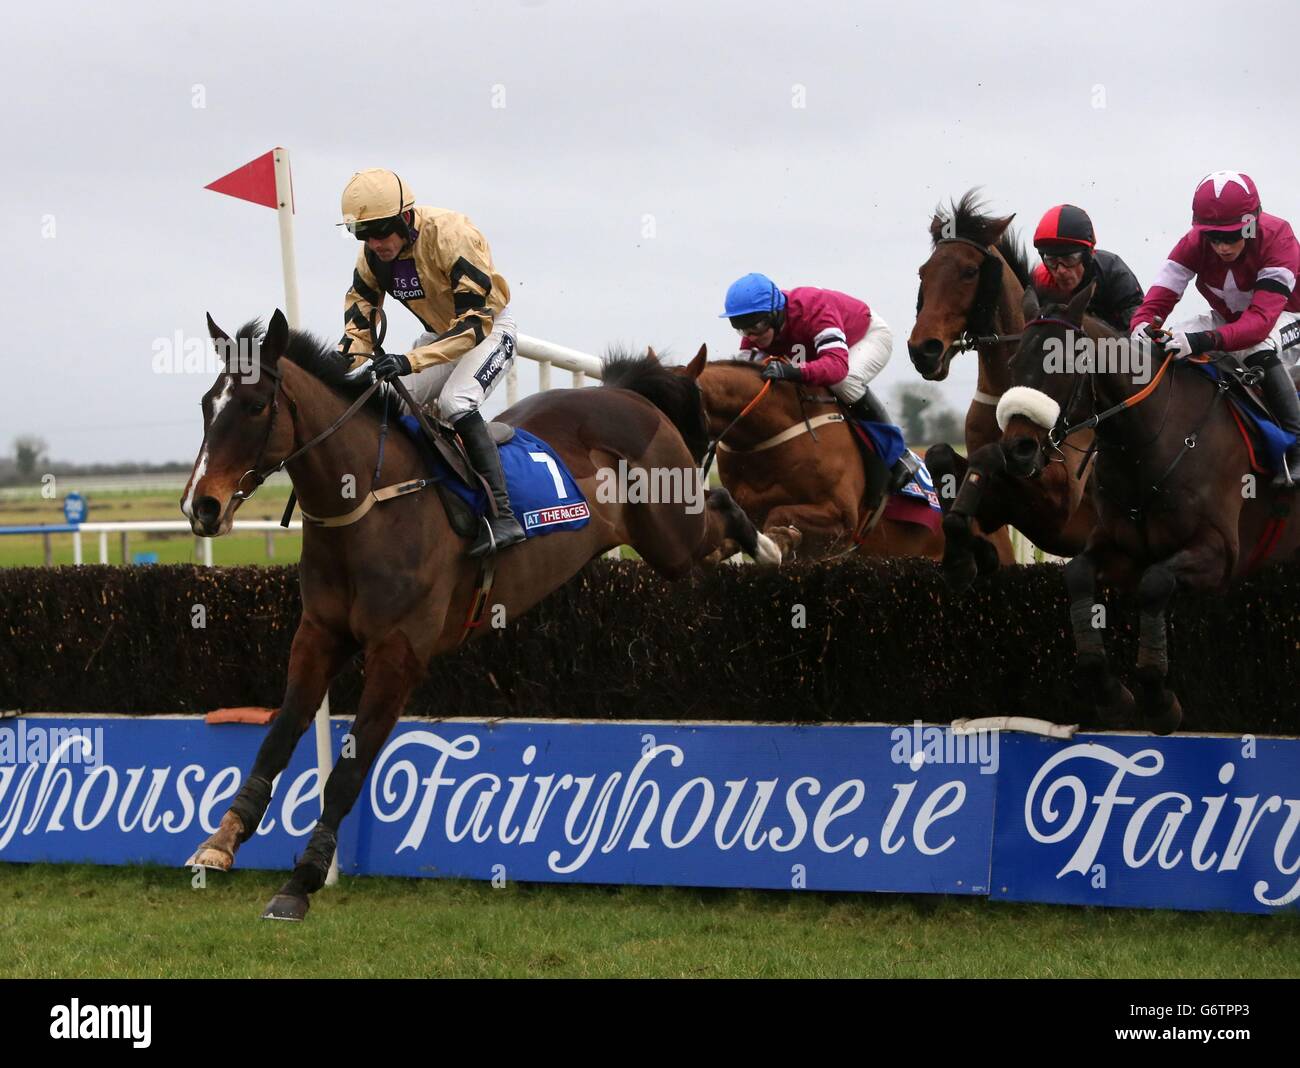 Pferderennen - Fairyhouse Racecourse. Allein von Ruby Walsh geritten gewinnt die Bobbyjo Steeplechase auf der Fairyhouse Racecourse, Ratoath, Irland. Stockfoto